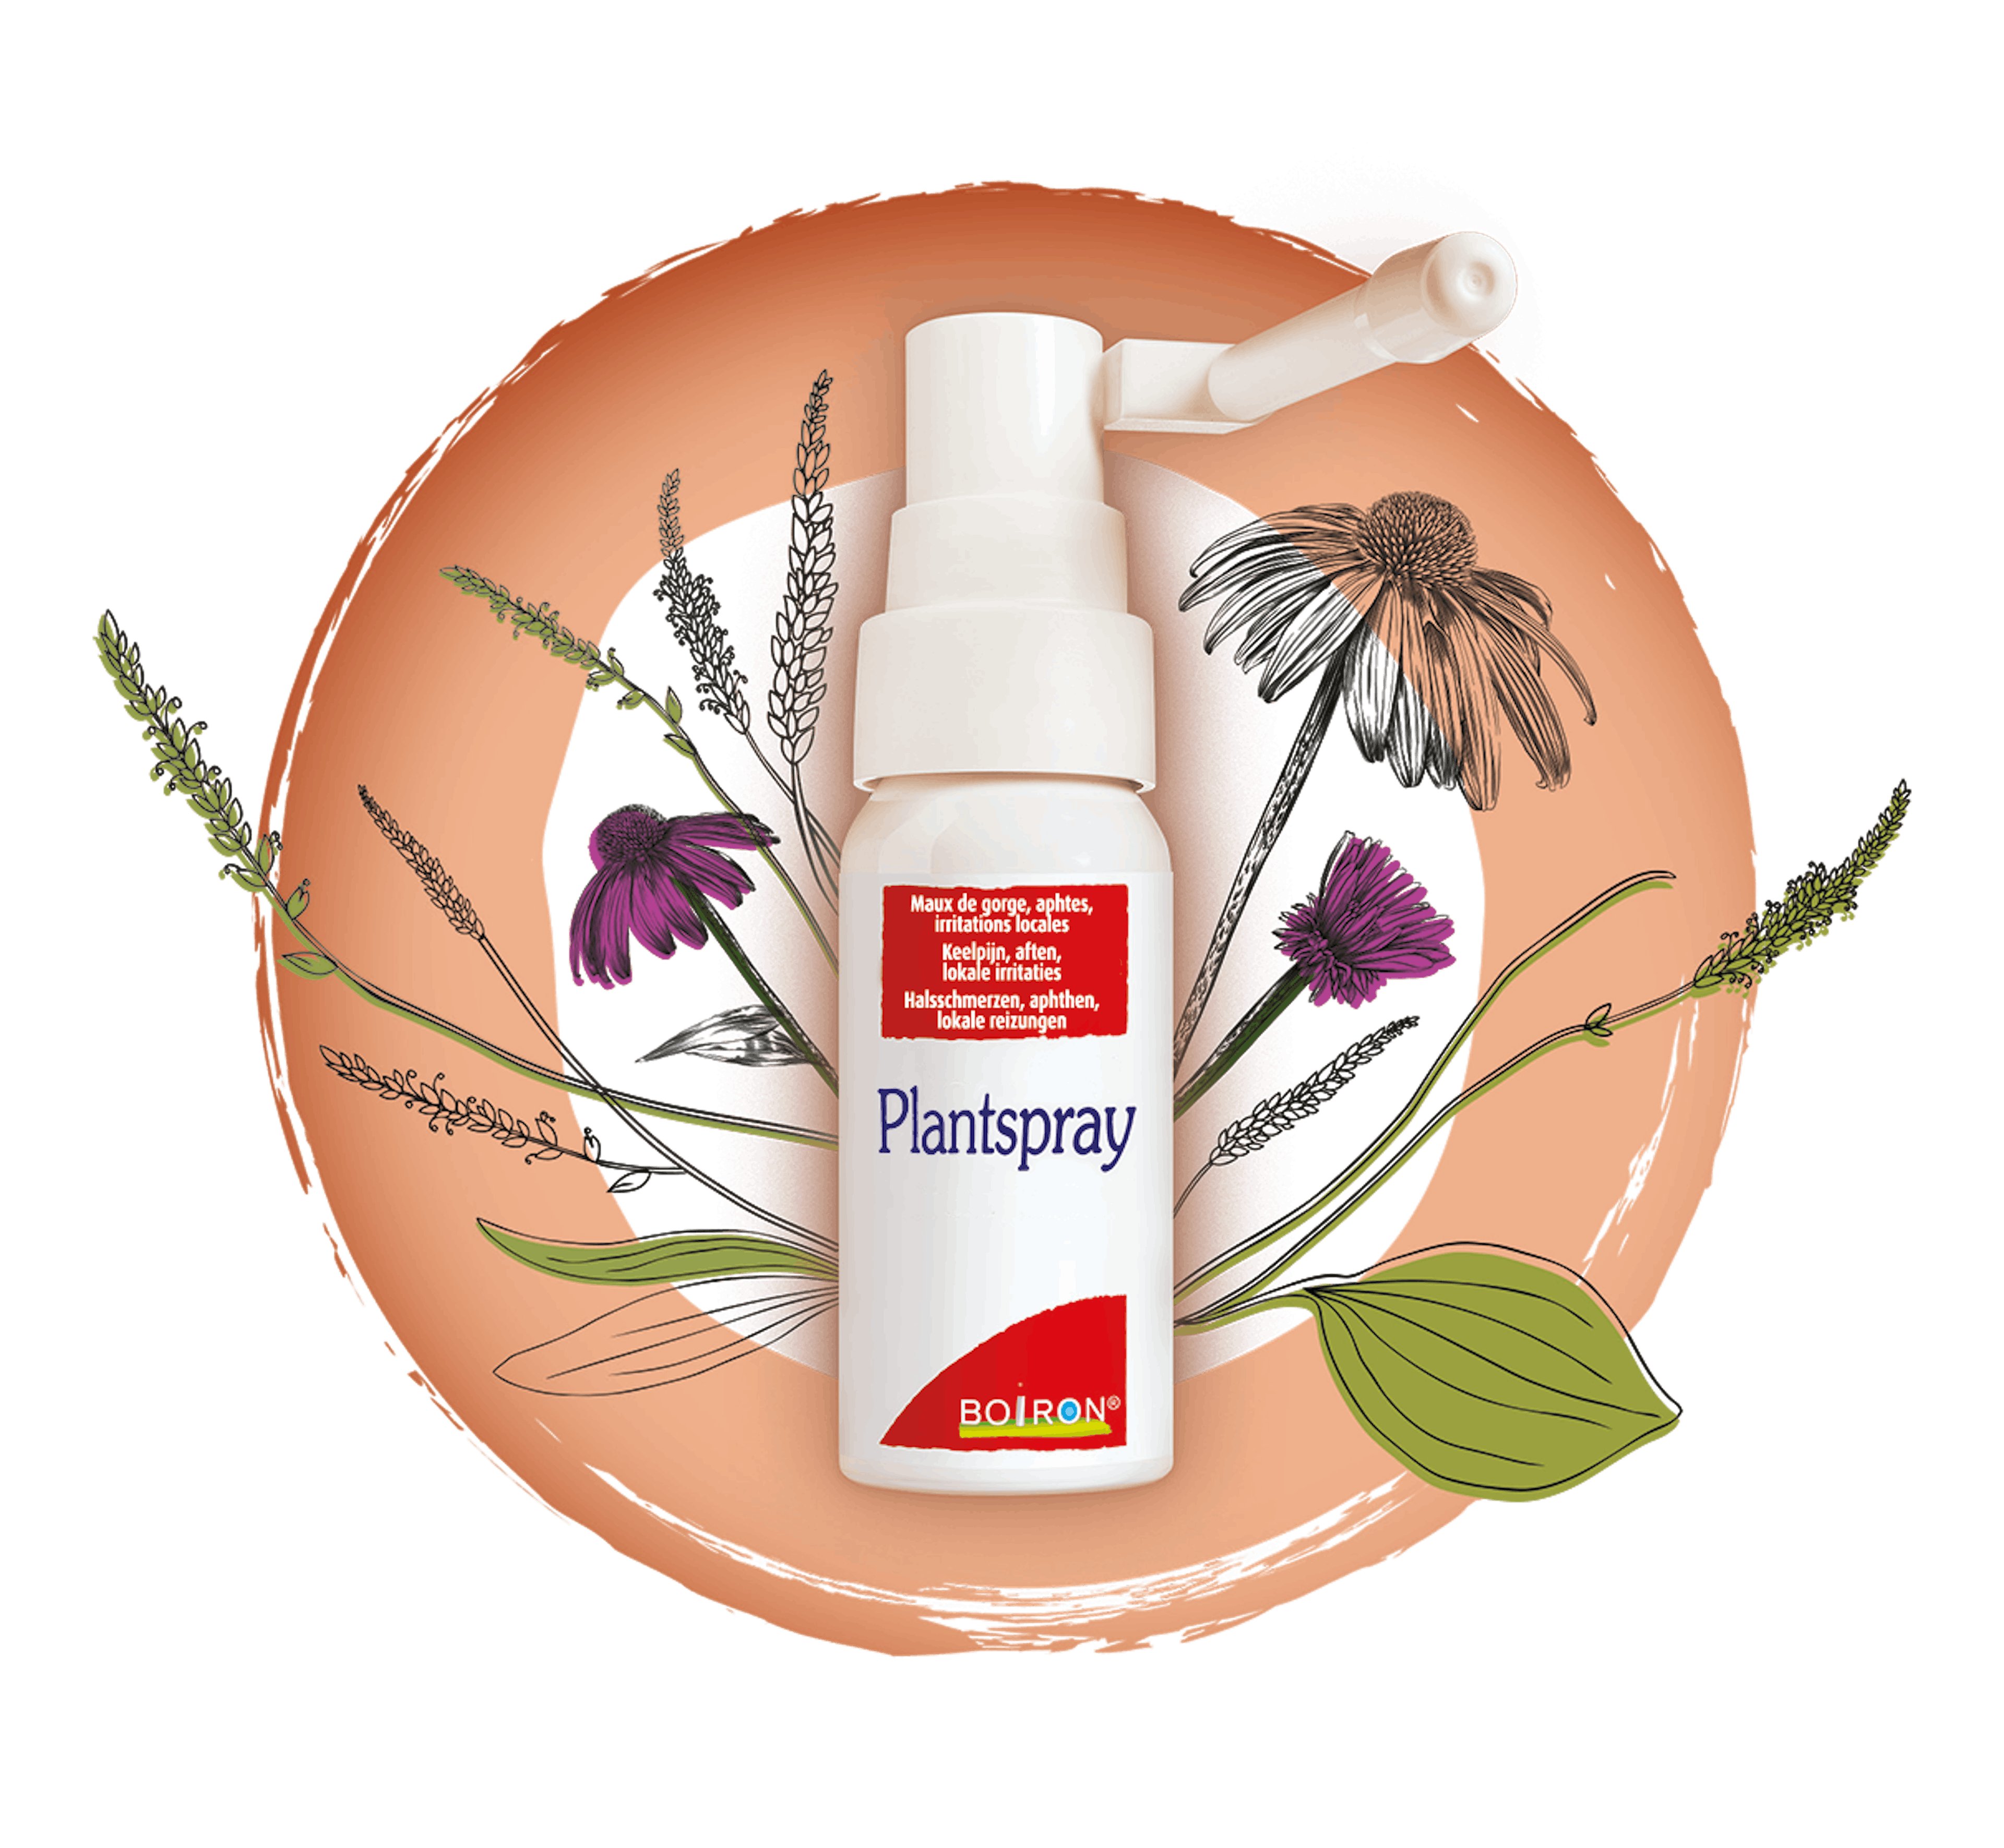 Plantspray - onze homeopathische geneesmiddelen specialiteiten - Keelpijn - Aften - Lokale irritaties